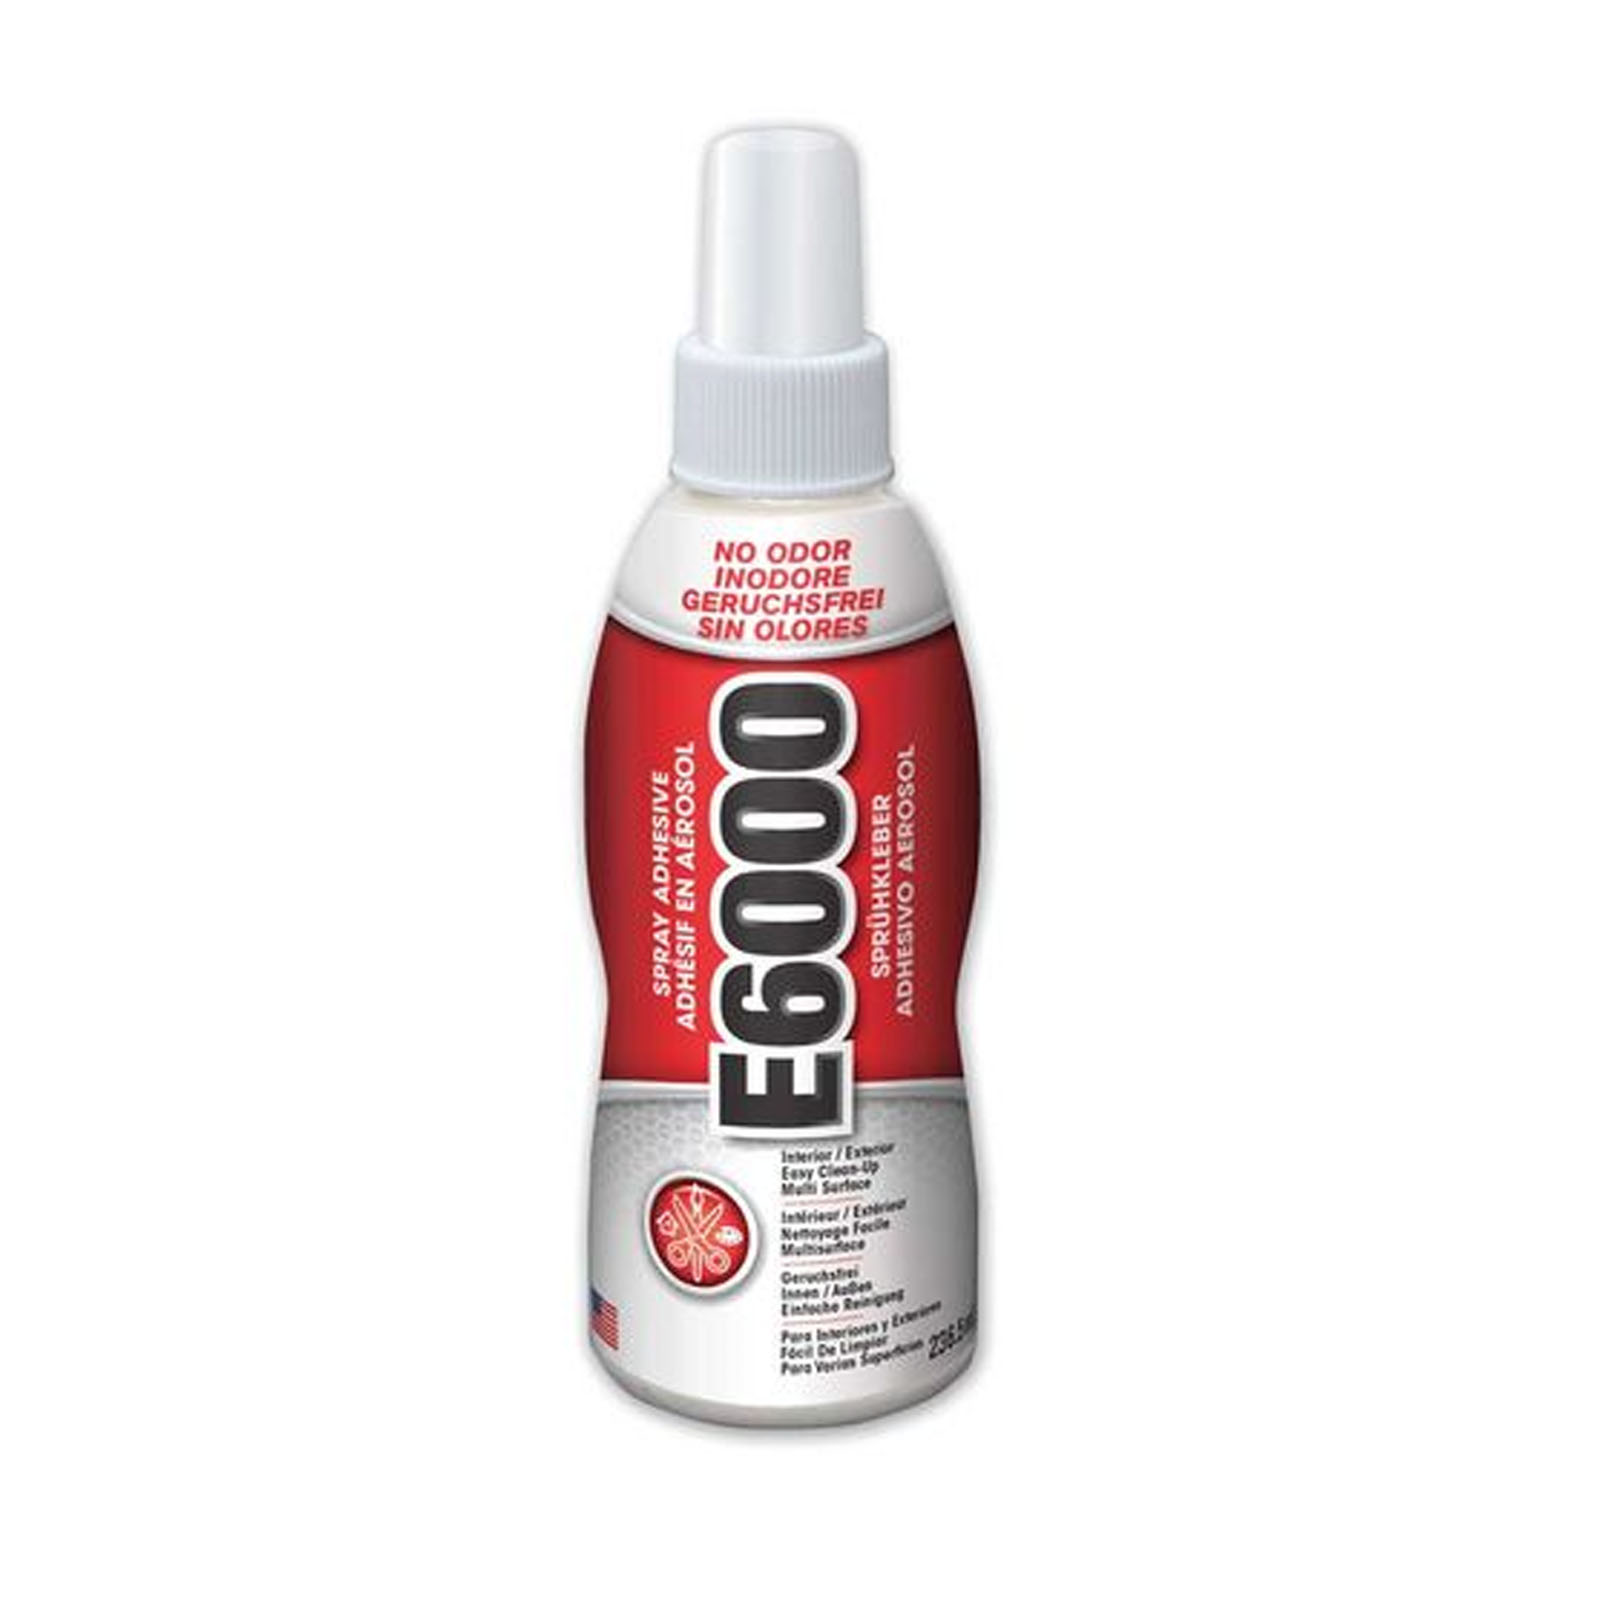 E6000 • Spray adhesive clear 236,5ml